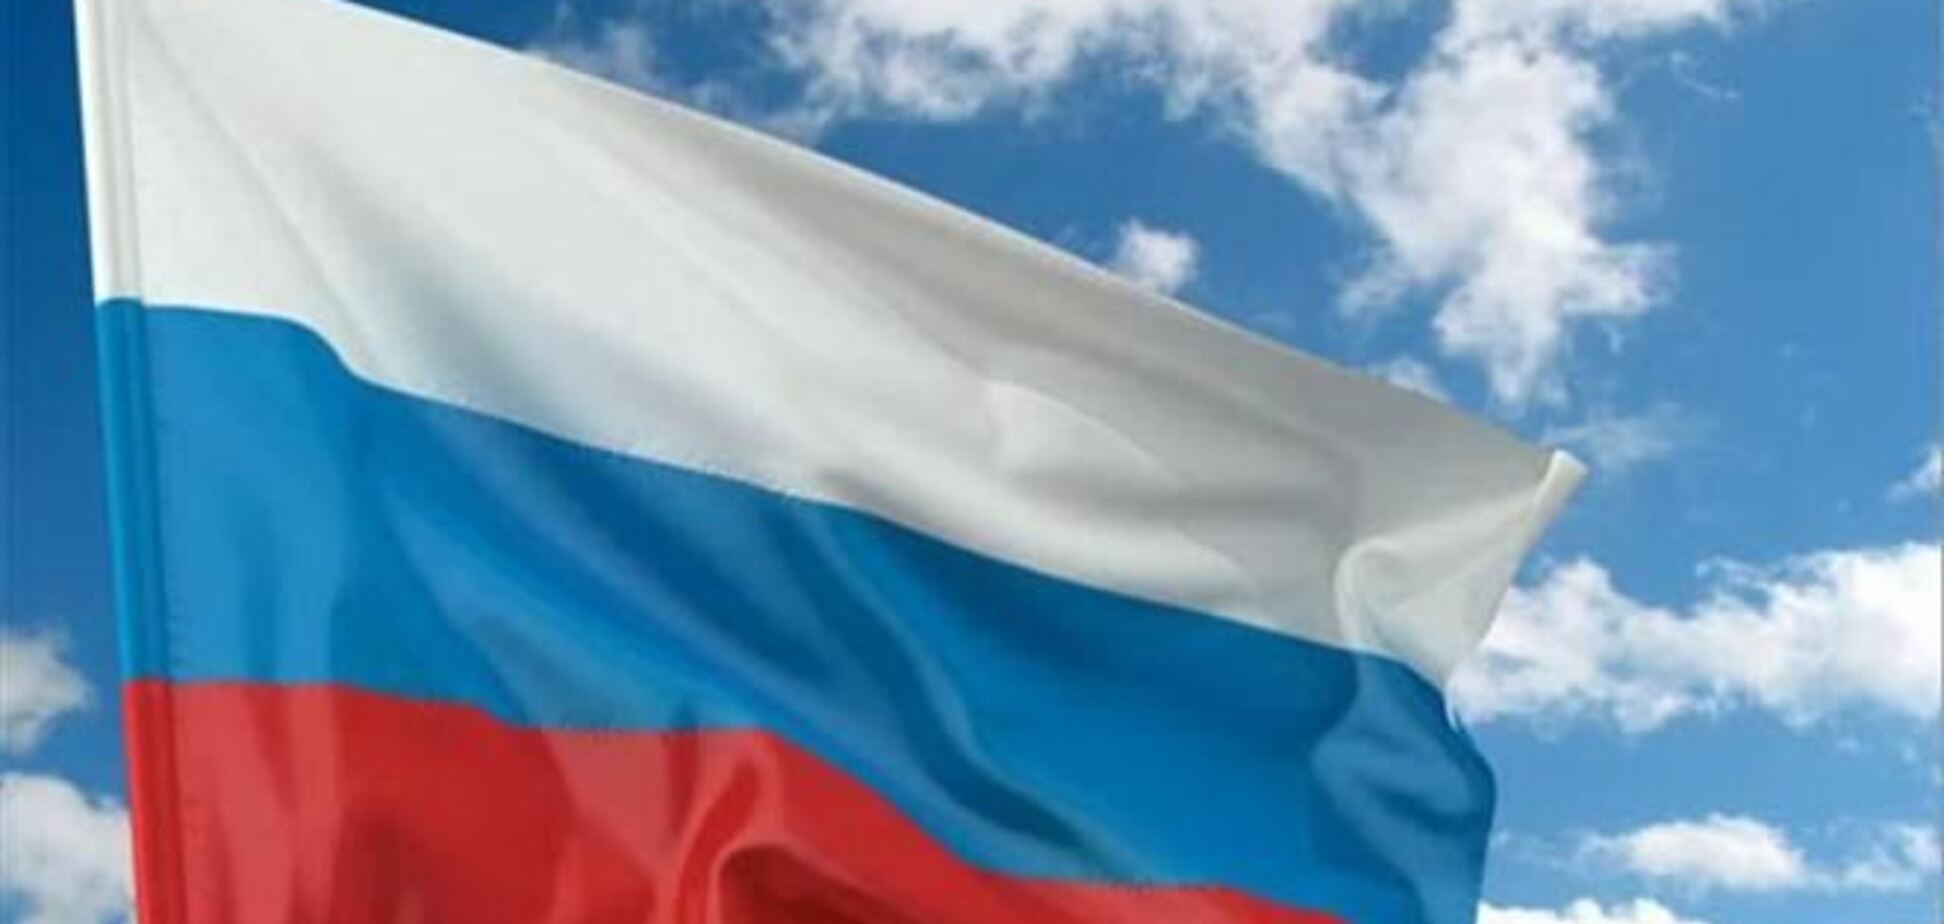 Міліція знайшла встановив російський прапор на Донецькій міськраді